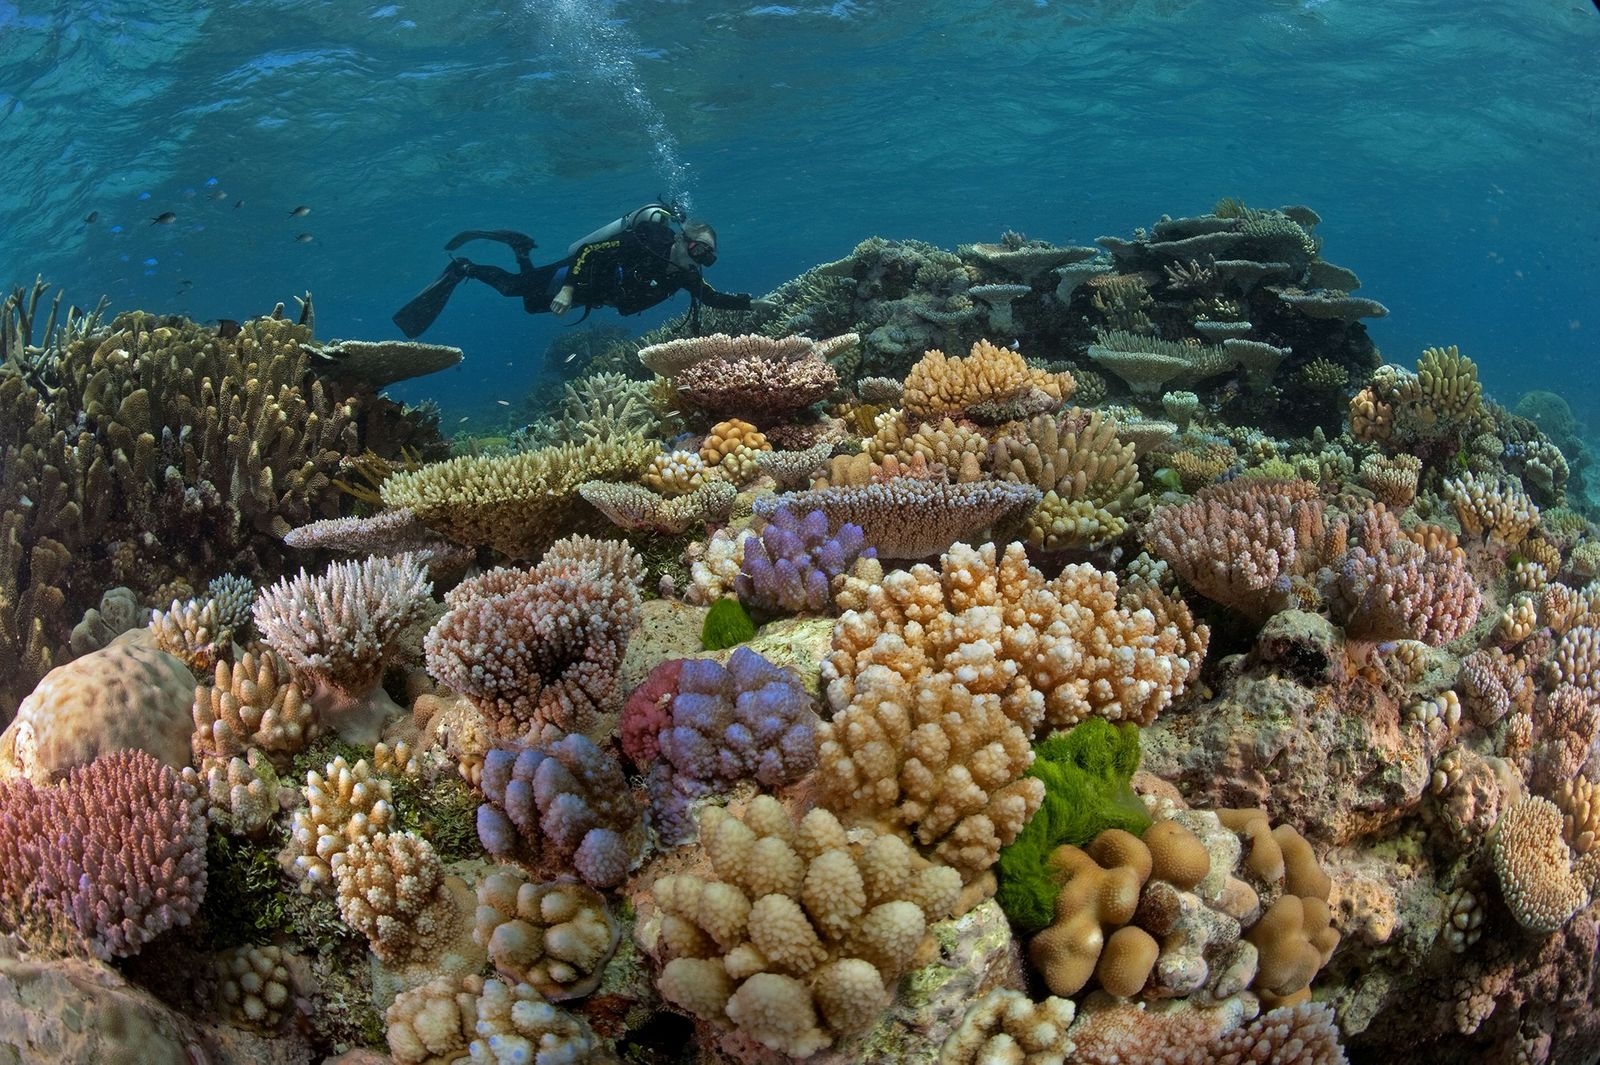 El coral. Великий Барьерный риф Австралия. Большой коралловый риф в Австралии. Большой Барьерный риф Австралия подводный мир. Кораллы большого барьерного рифа Австралия.